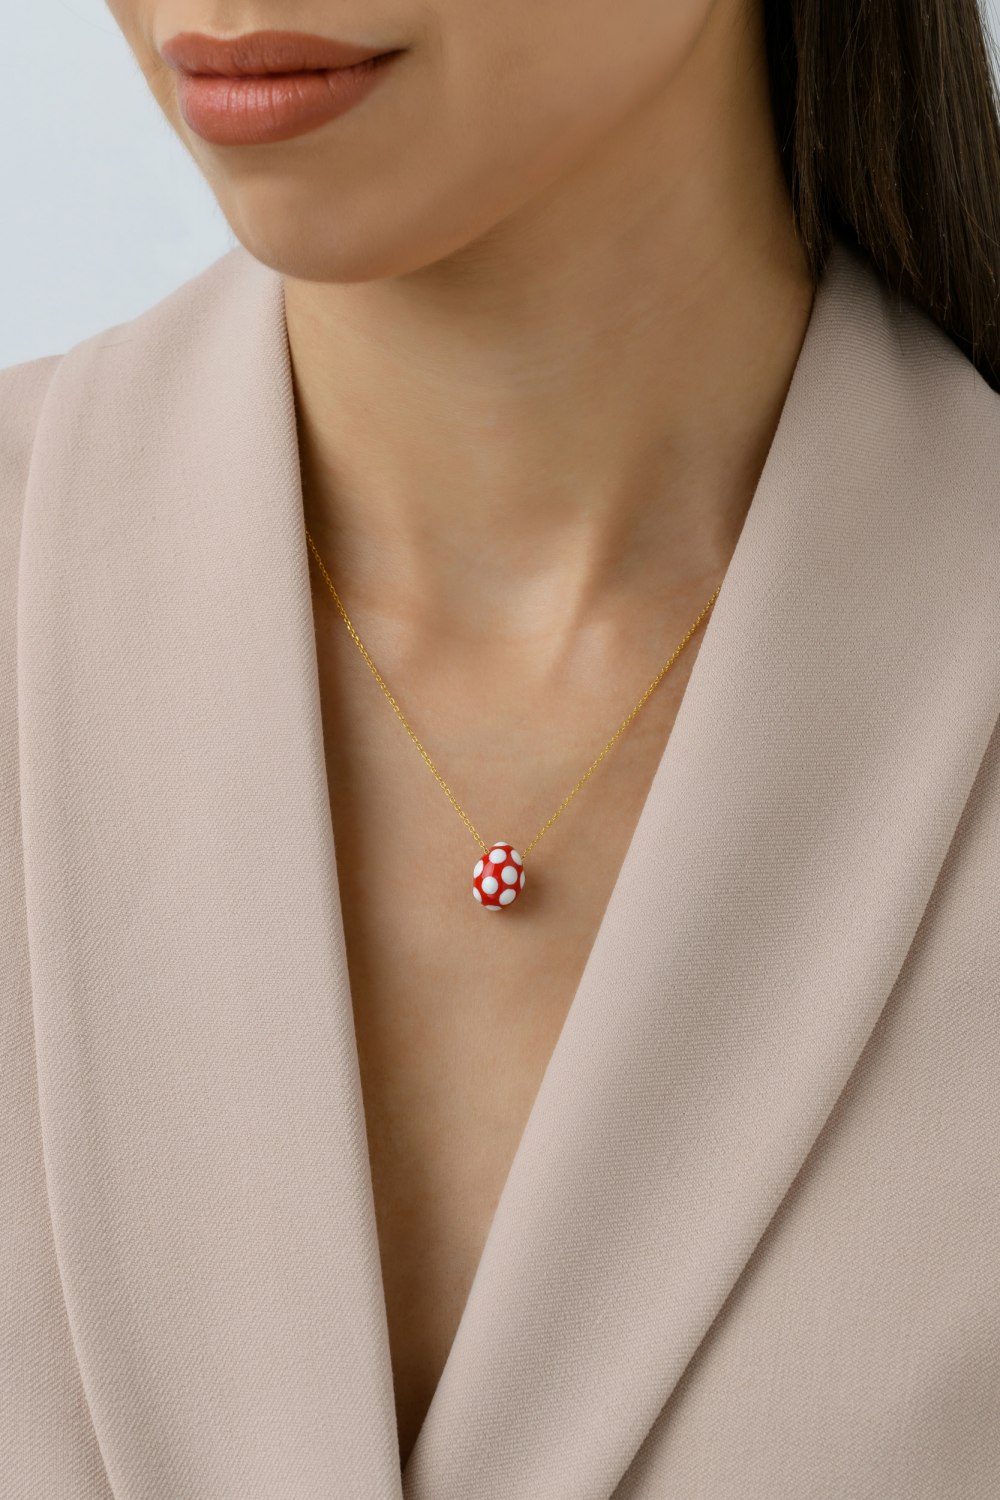 KESSARIS - Red Polka-Dot Easter Egg Pendant Necklace 